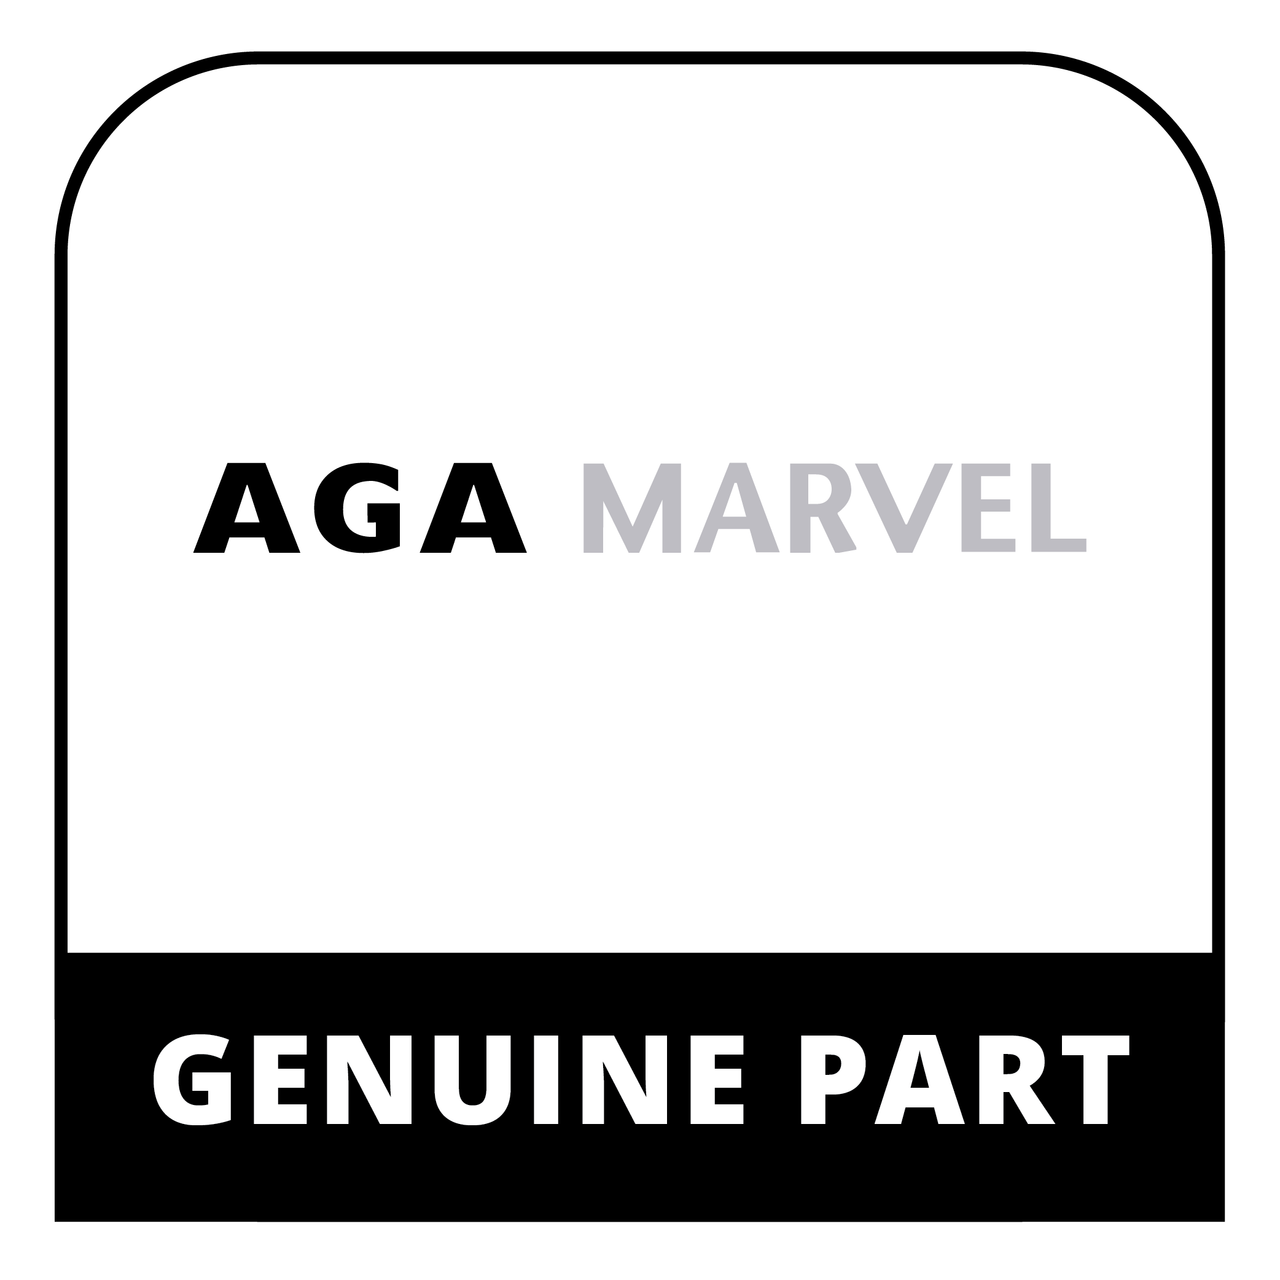 AGA Marvel S41015903-BLK - Thermistor Assembly - Genuine AGA Marvel Part